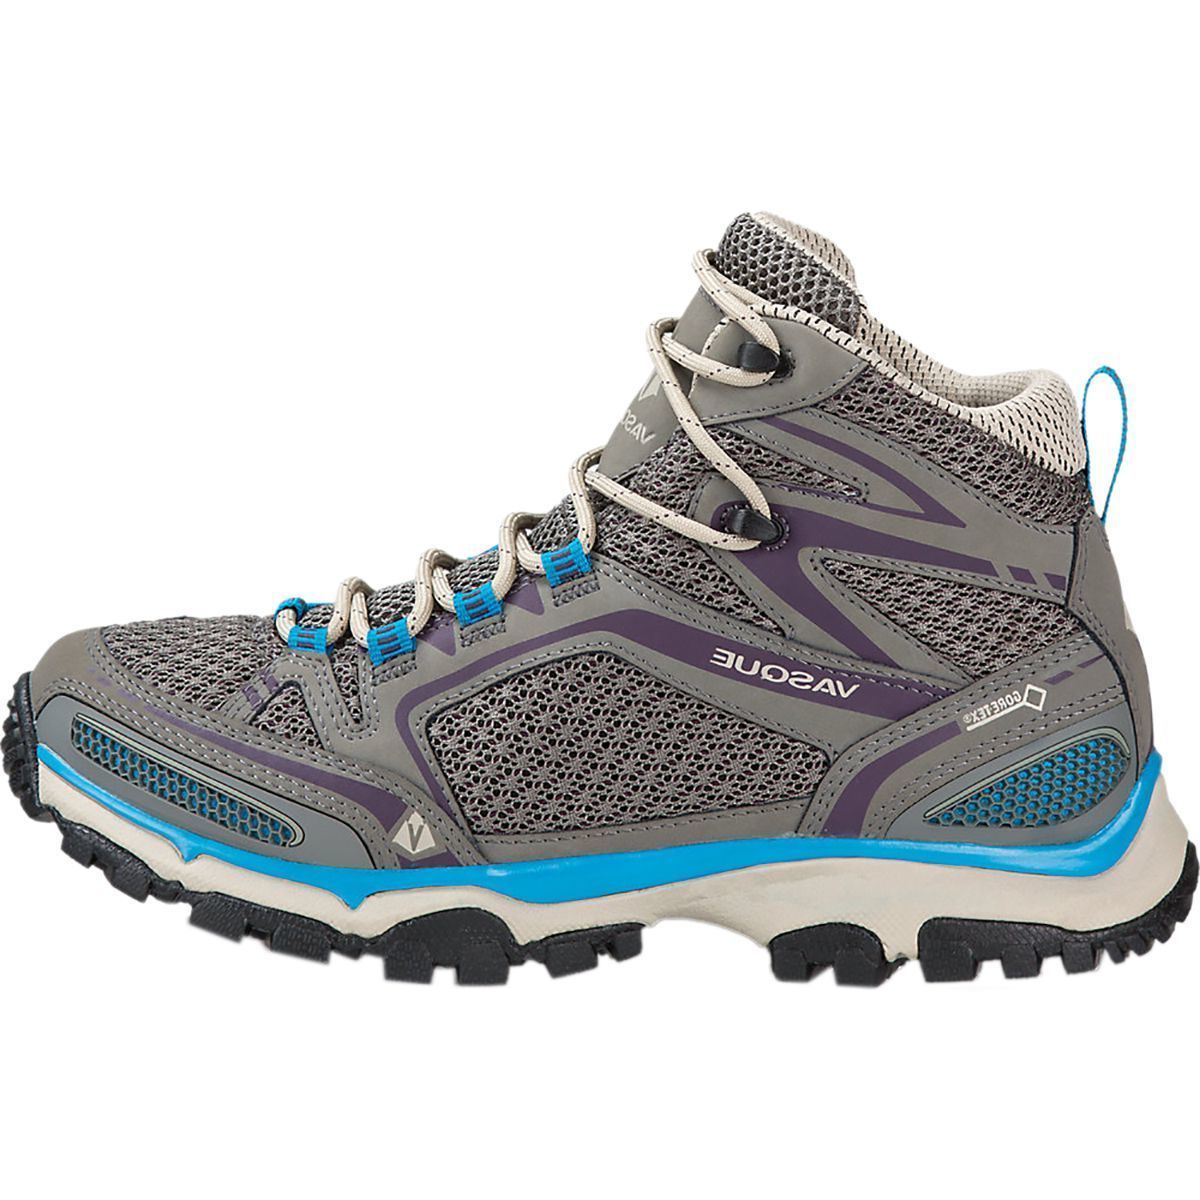 Vasque Inhaler II GTX Hiking Boot - Women's